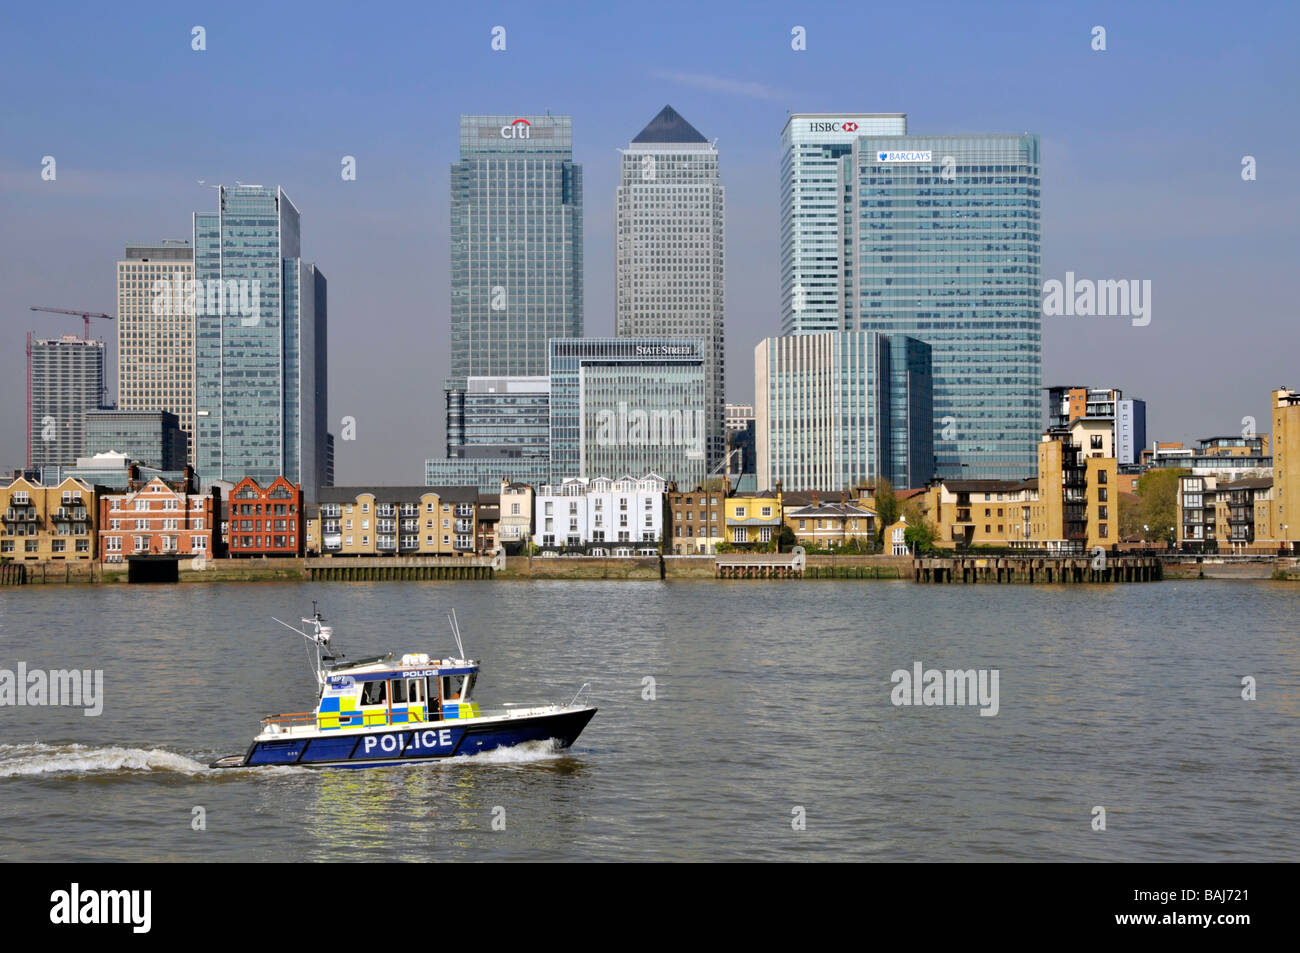 Punto di riferimento per gli affari e le banche lungo il fiume a Canary Wharf Urban Sviluppo in East London Docklands accanto al Tamigi a MET Polizia pattuglia barca UK Foto Stock